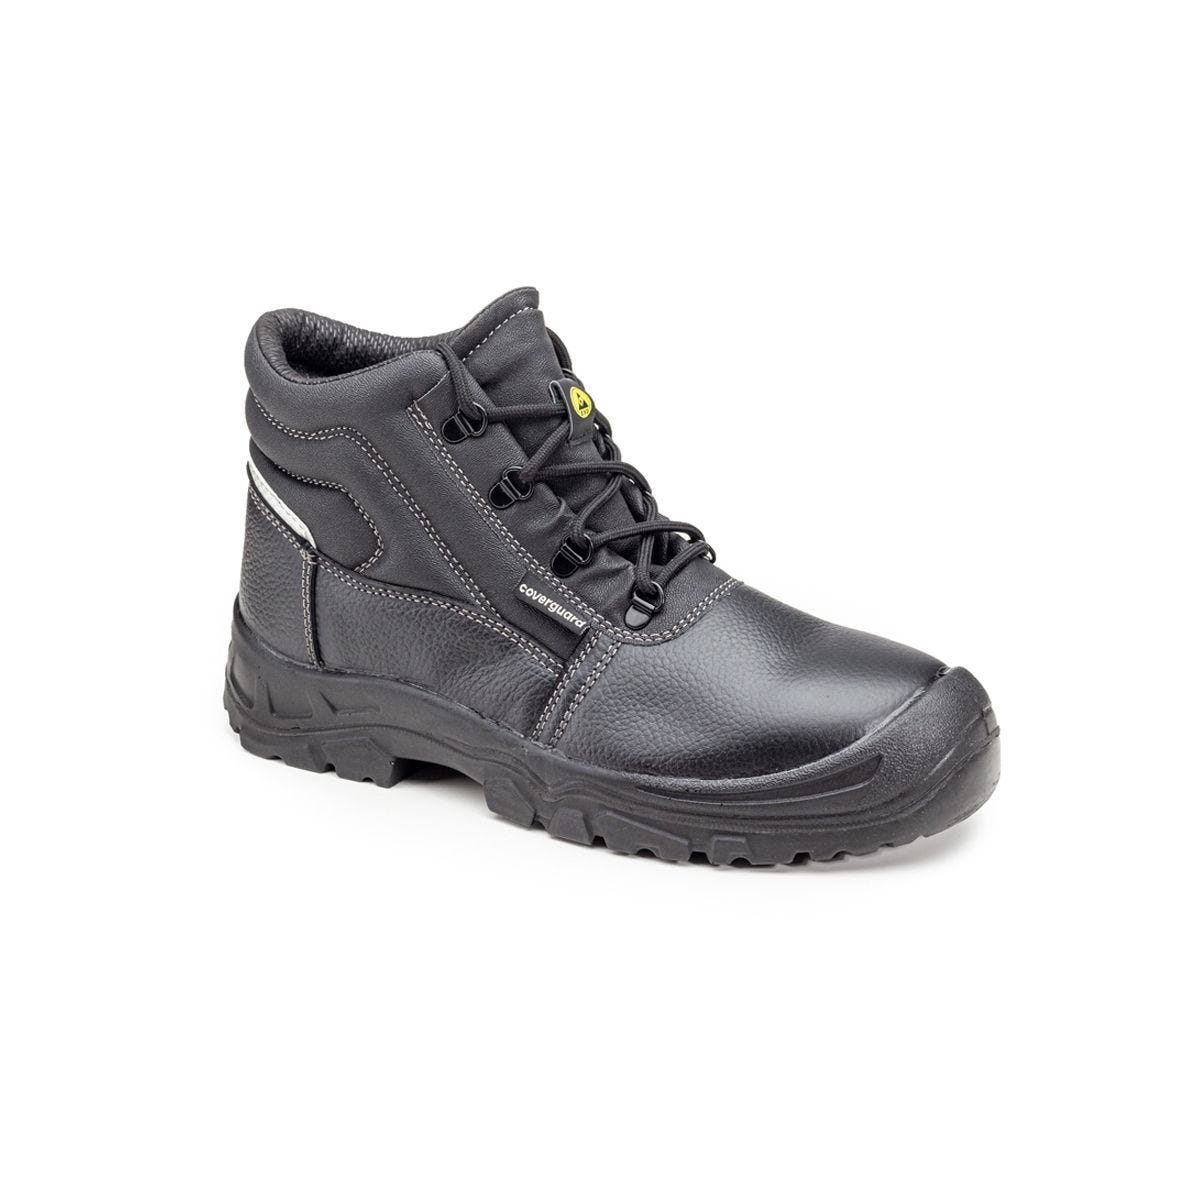 Chaussures de sécurité hautes Azurite II S3 ESD noir - Coverguard - Taille 46 0